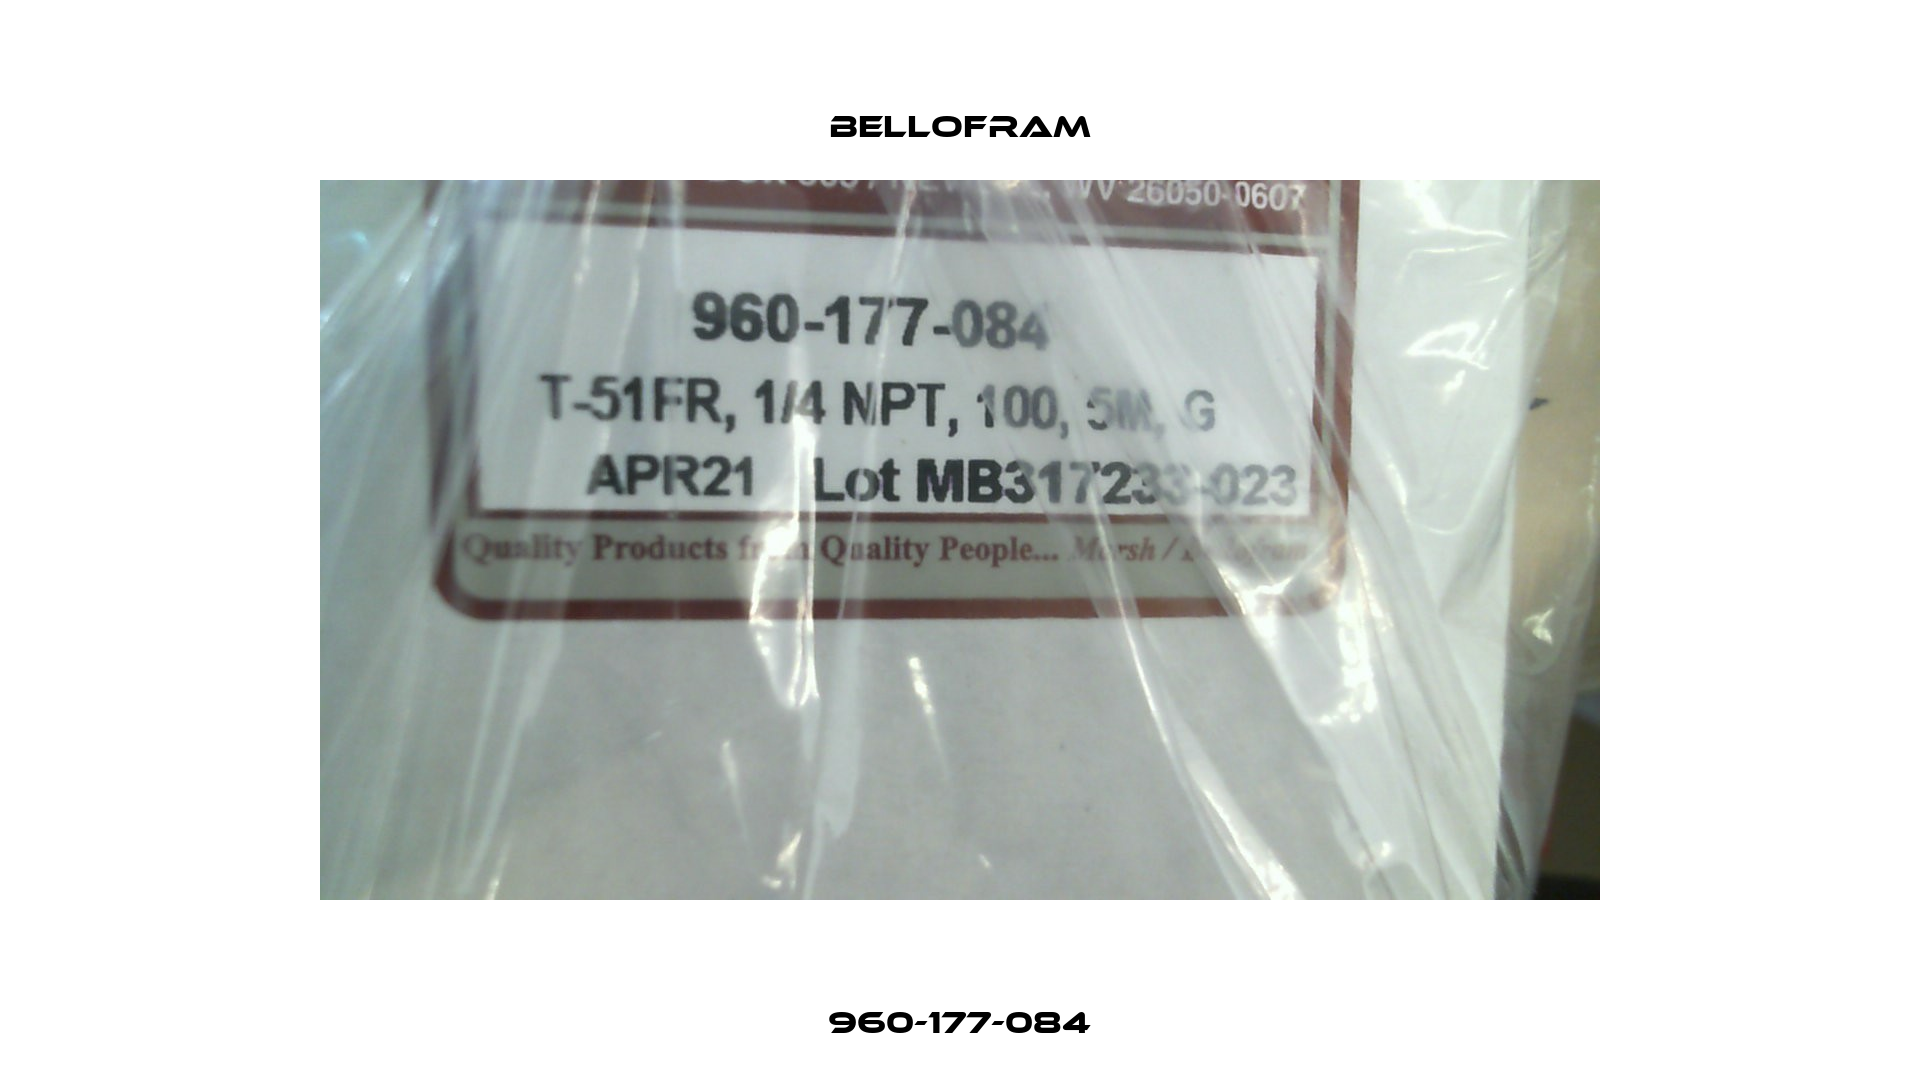 960-177-084 Bellofram